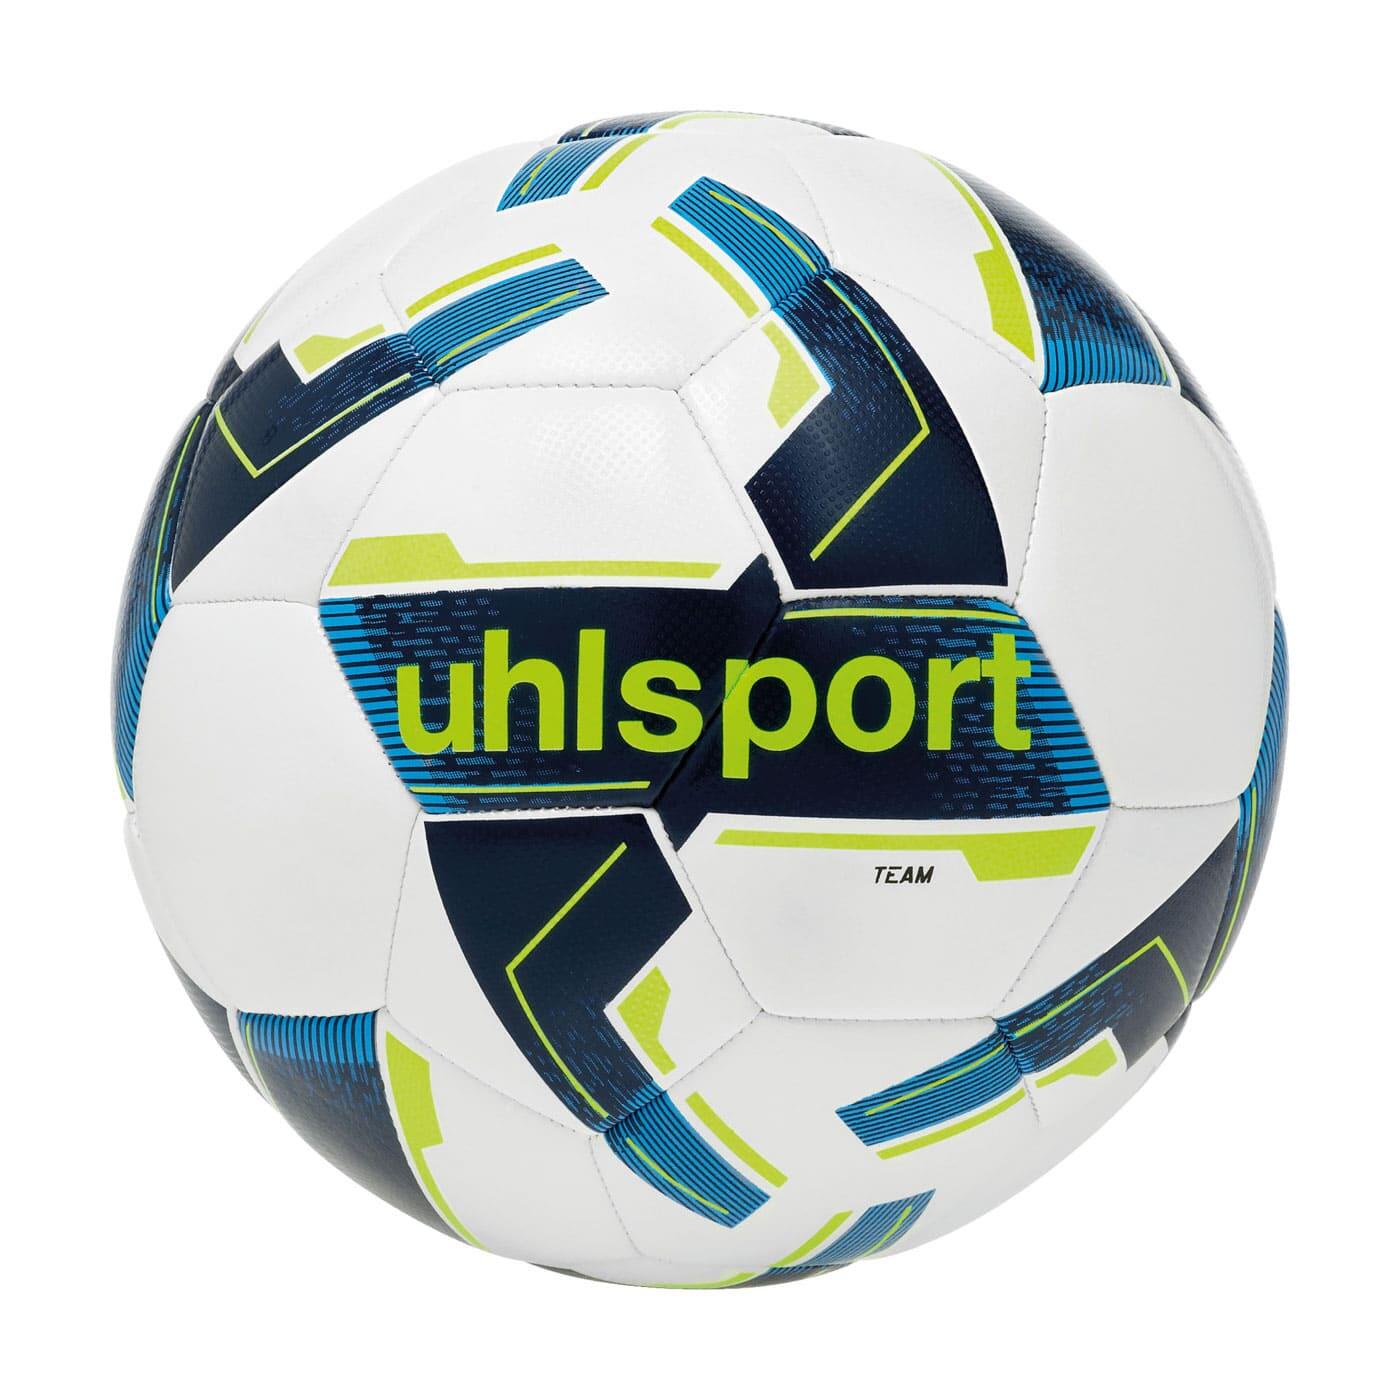 UHLSPORT Uhlsport Team Training Football Size 4 - White